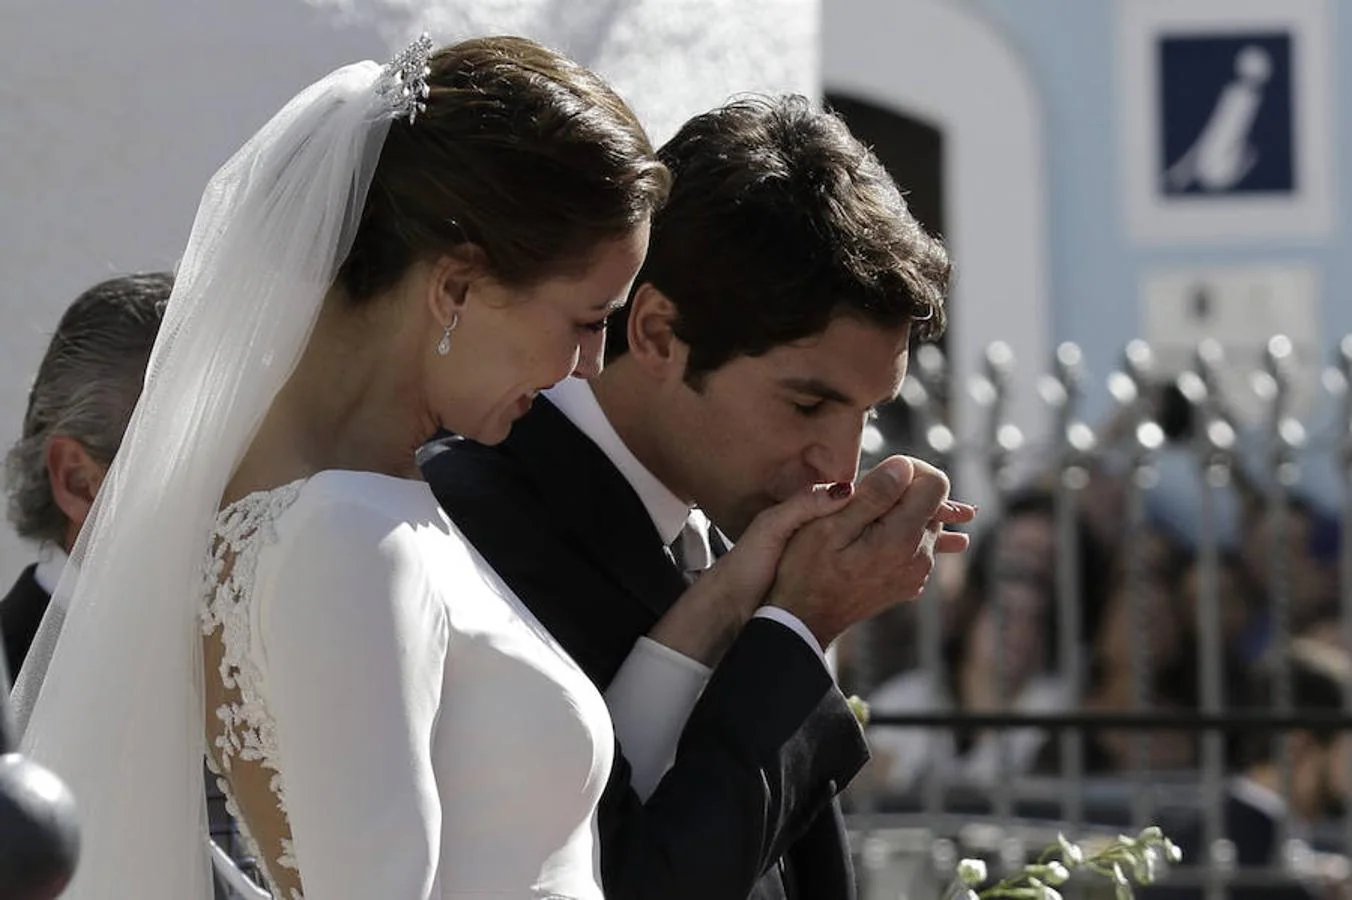 Su boda fue una ceremonia religiosa emotiva y cargada de significado, oficializada por el sacerdote Ignacio Jiménez Sánchez-Dalp, confesor y amigo de la fallecida duquesa de Alba